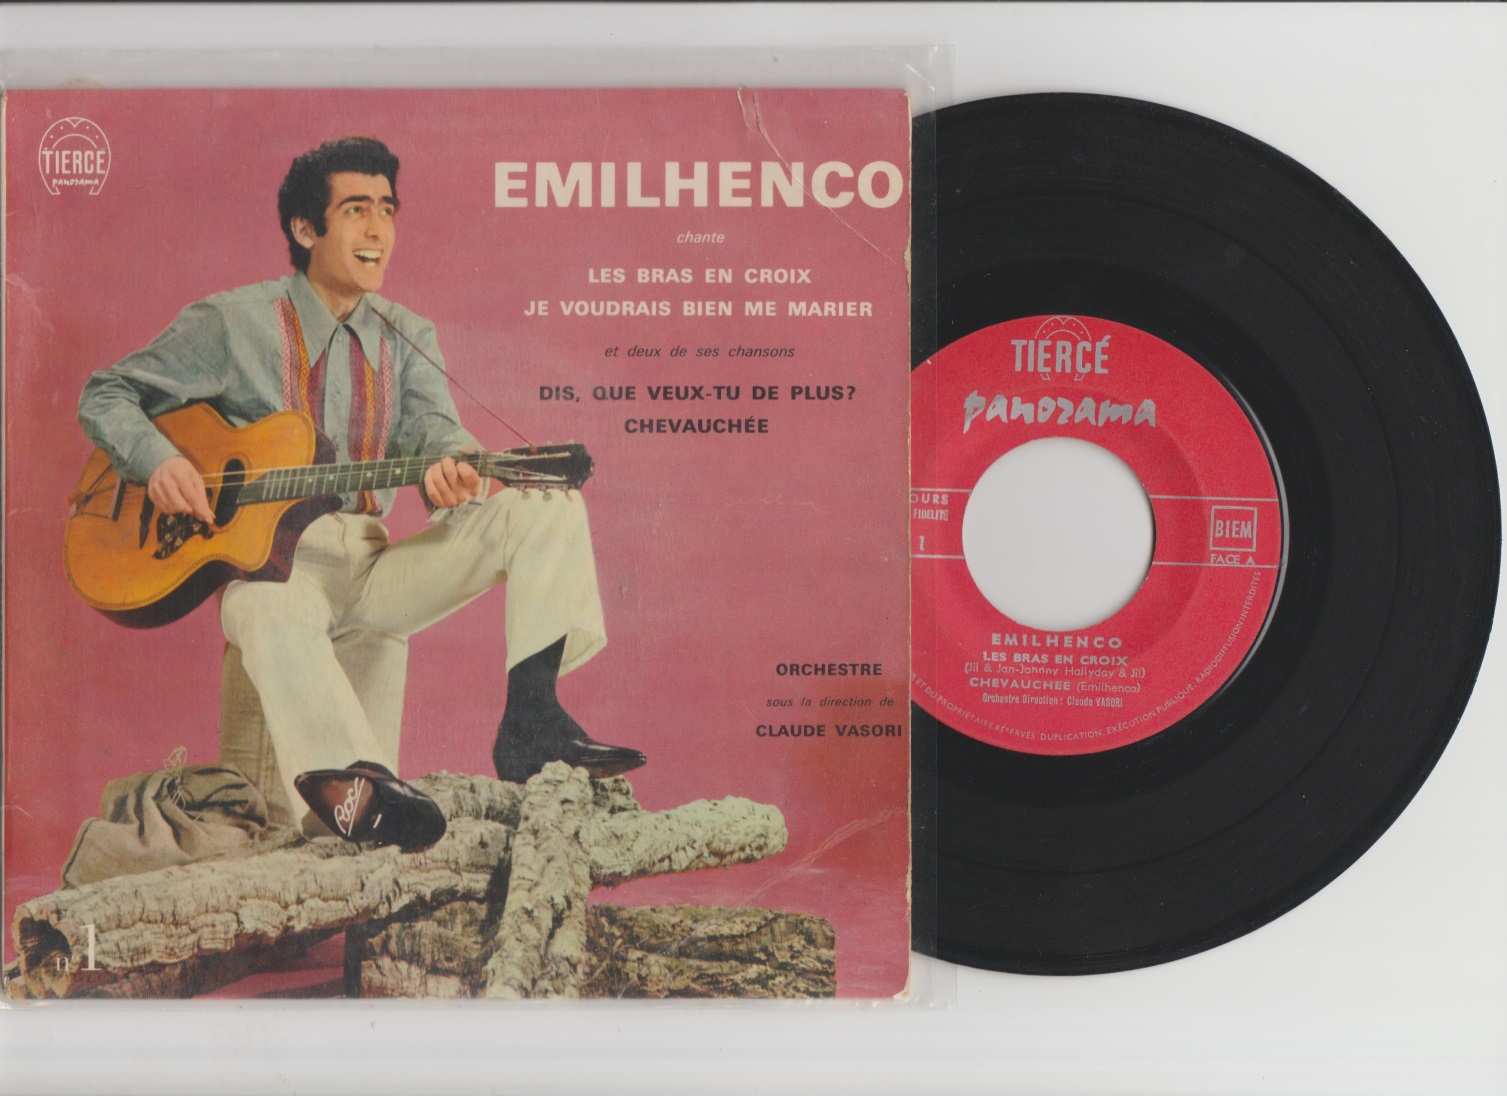 Emilhenco label tiercé panorama 1963.jpg